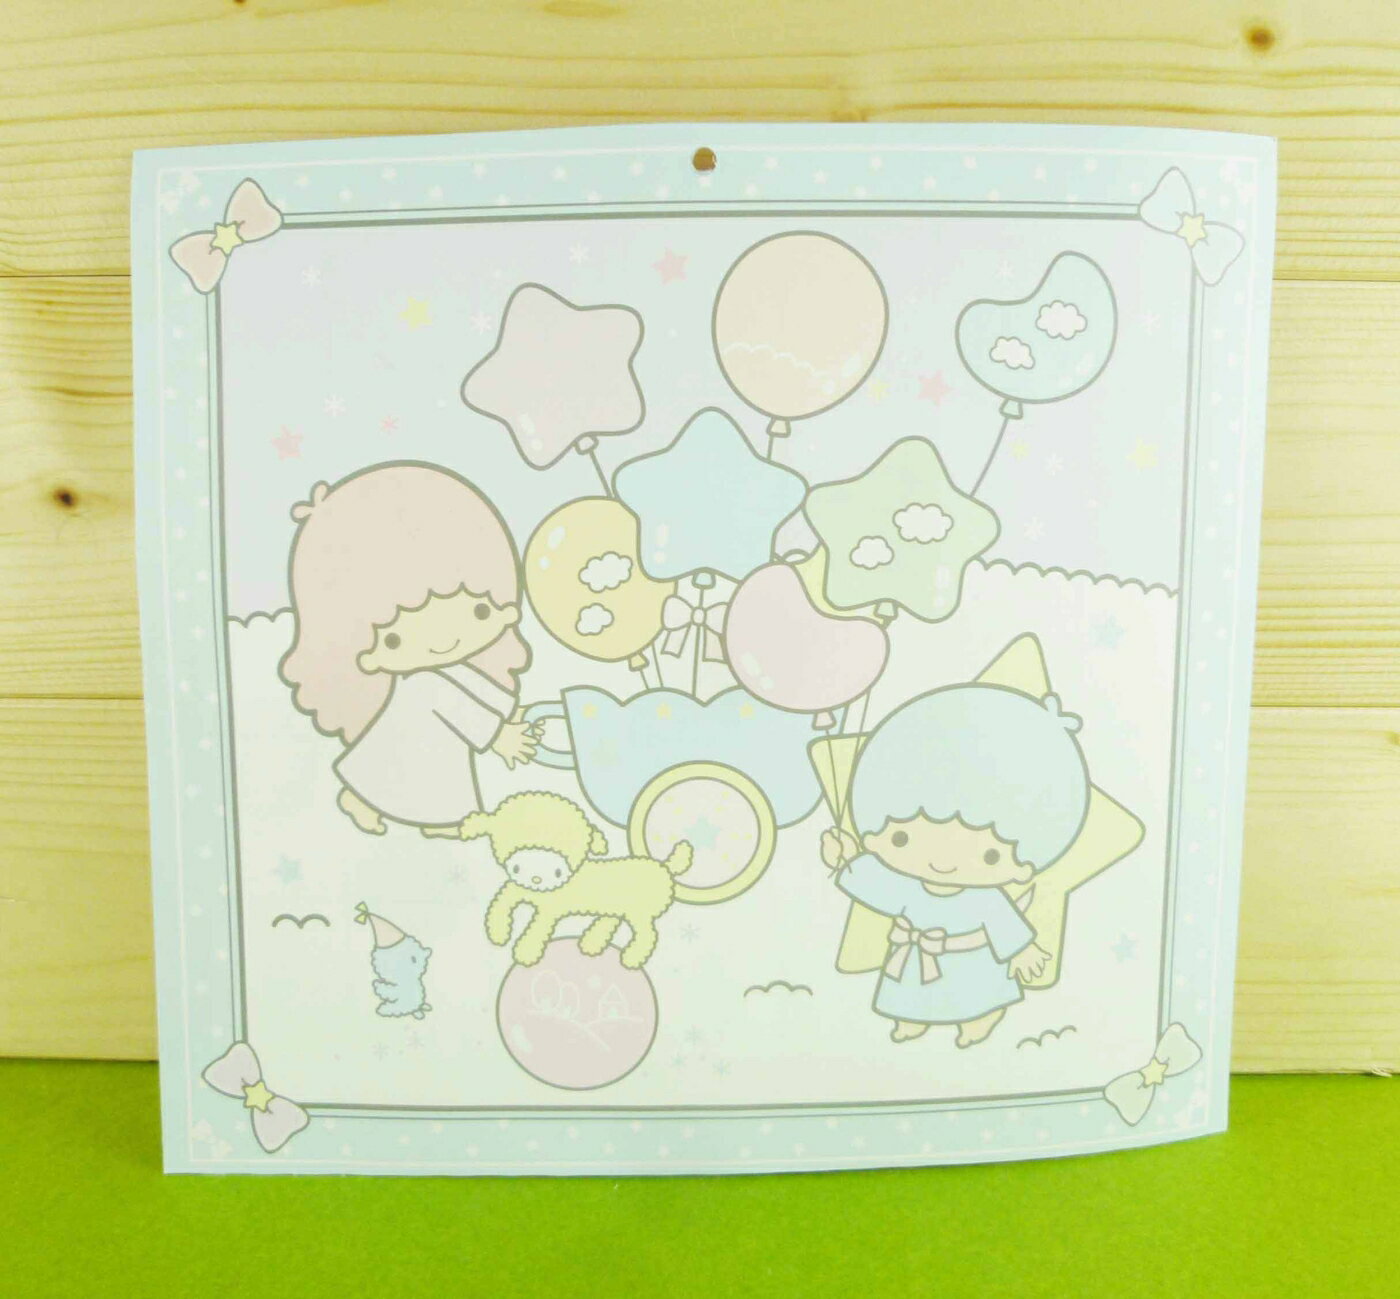 【震撼精品百貨】Little Twin Stars KiKi&LaLa 雙子星小天使 雙面卡片-藍氣球 震撼日式精品百貨